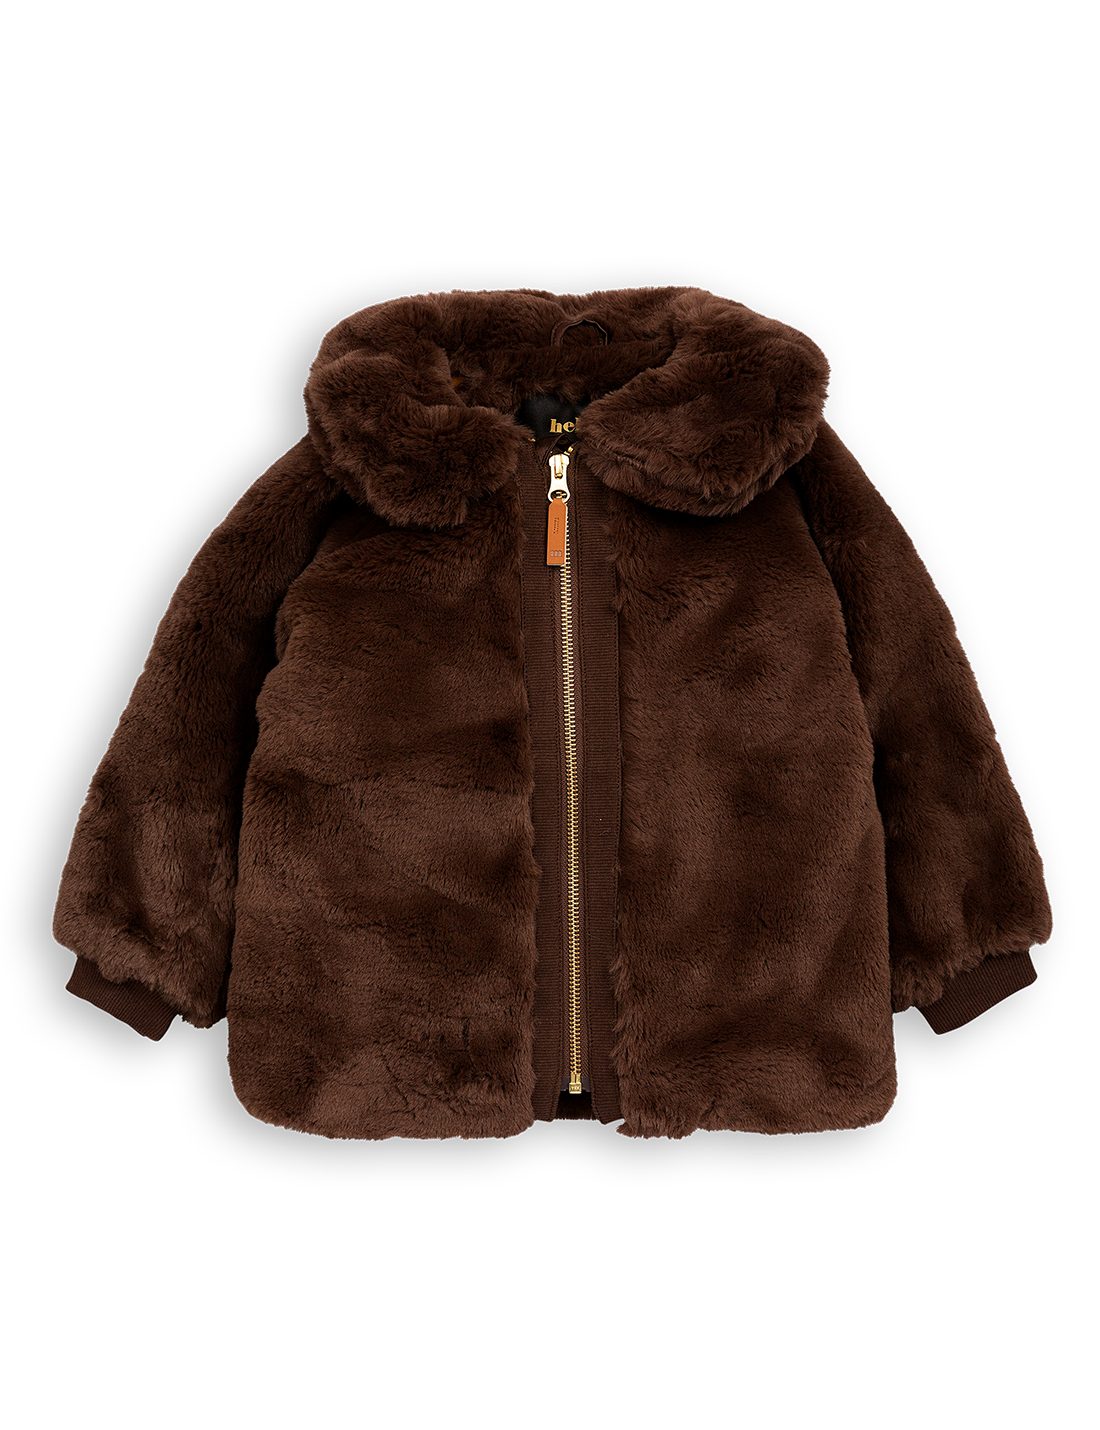 Mini Rodini Faux Fur Jacket